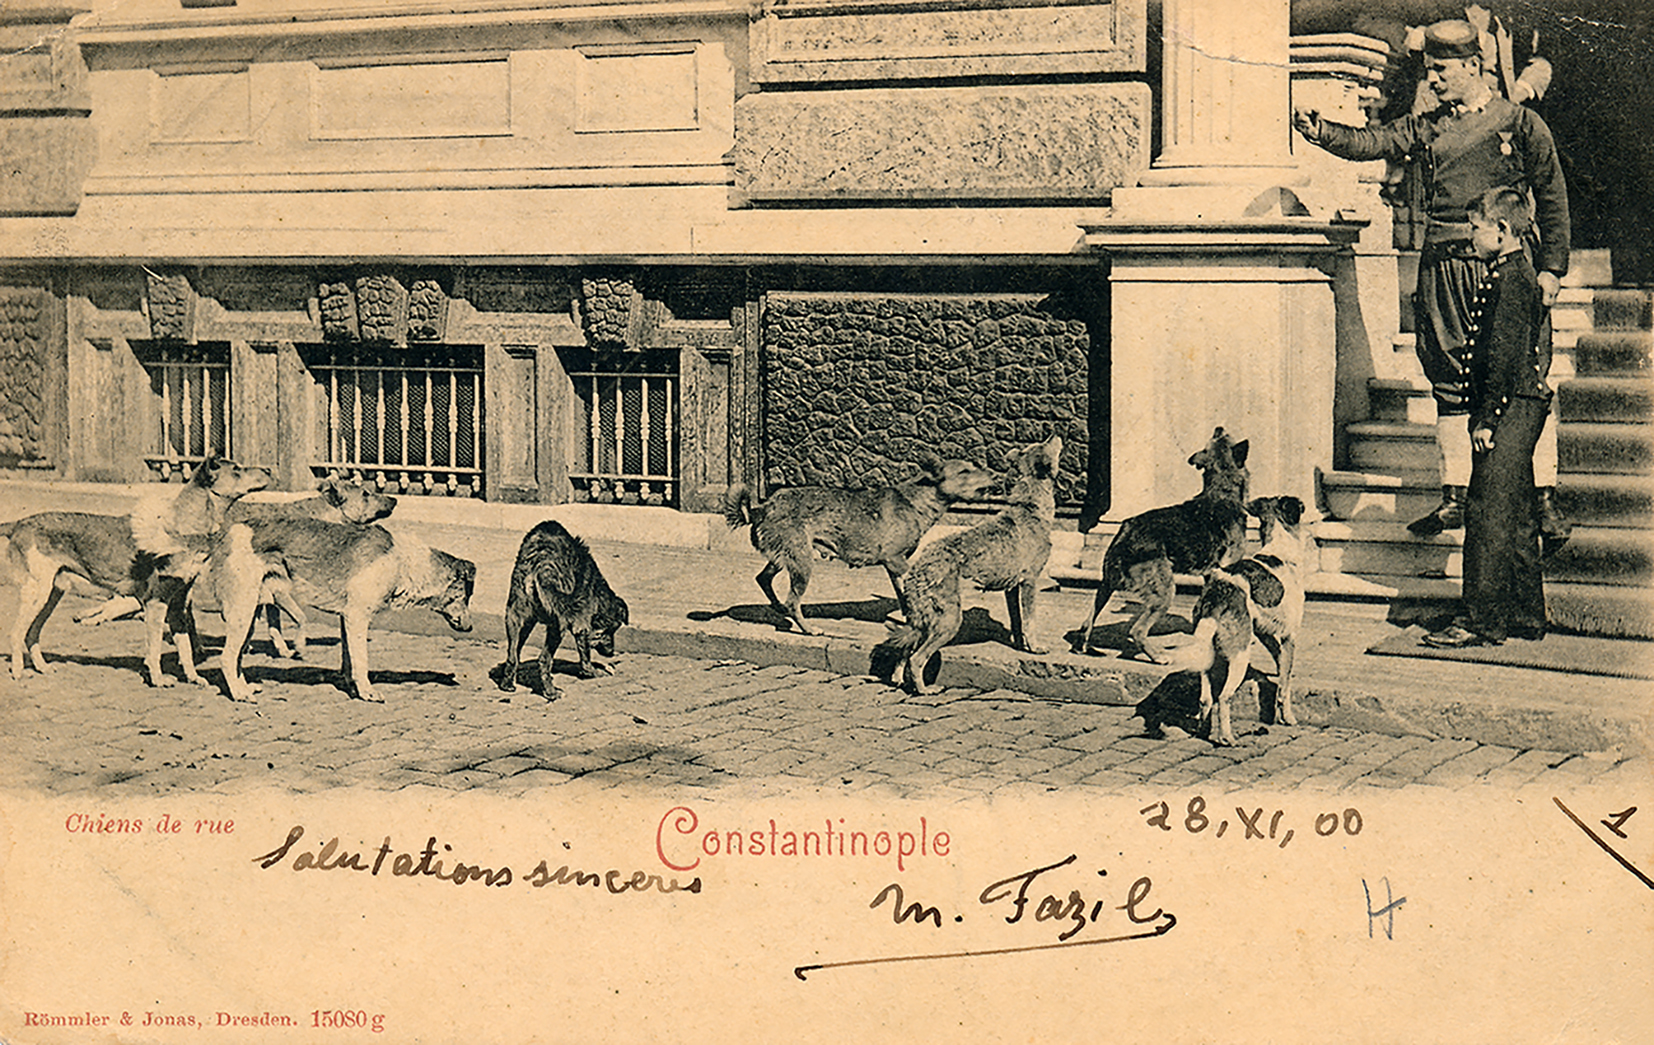 Bristol Oteli’nin (Pera Müzesi) önünde sokak köpekleri.